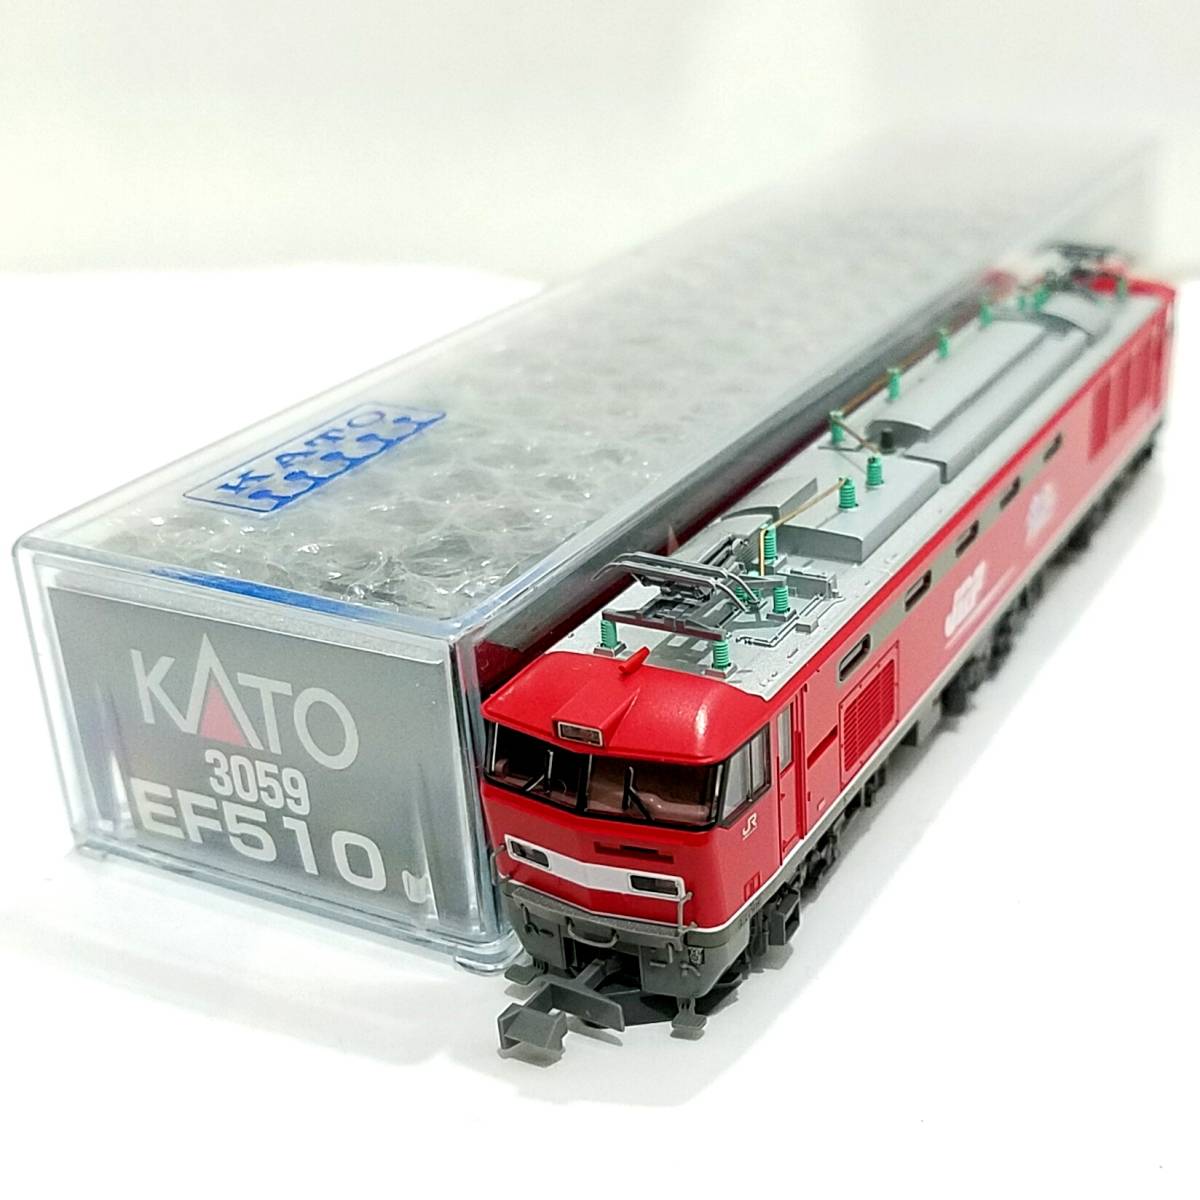 新品同様品 KATO 3059 EF510 0 JR貨物 電気機関車 「RED THUNDER」 貨物列車の牽引 レッドサンダー 赤 Nゲージ動力車カトー鉄道模型N-GAUGE_画像8